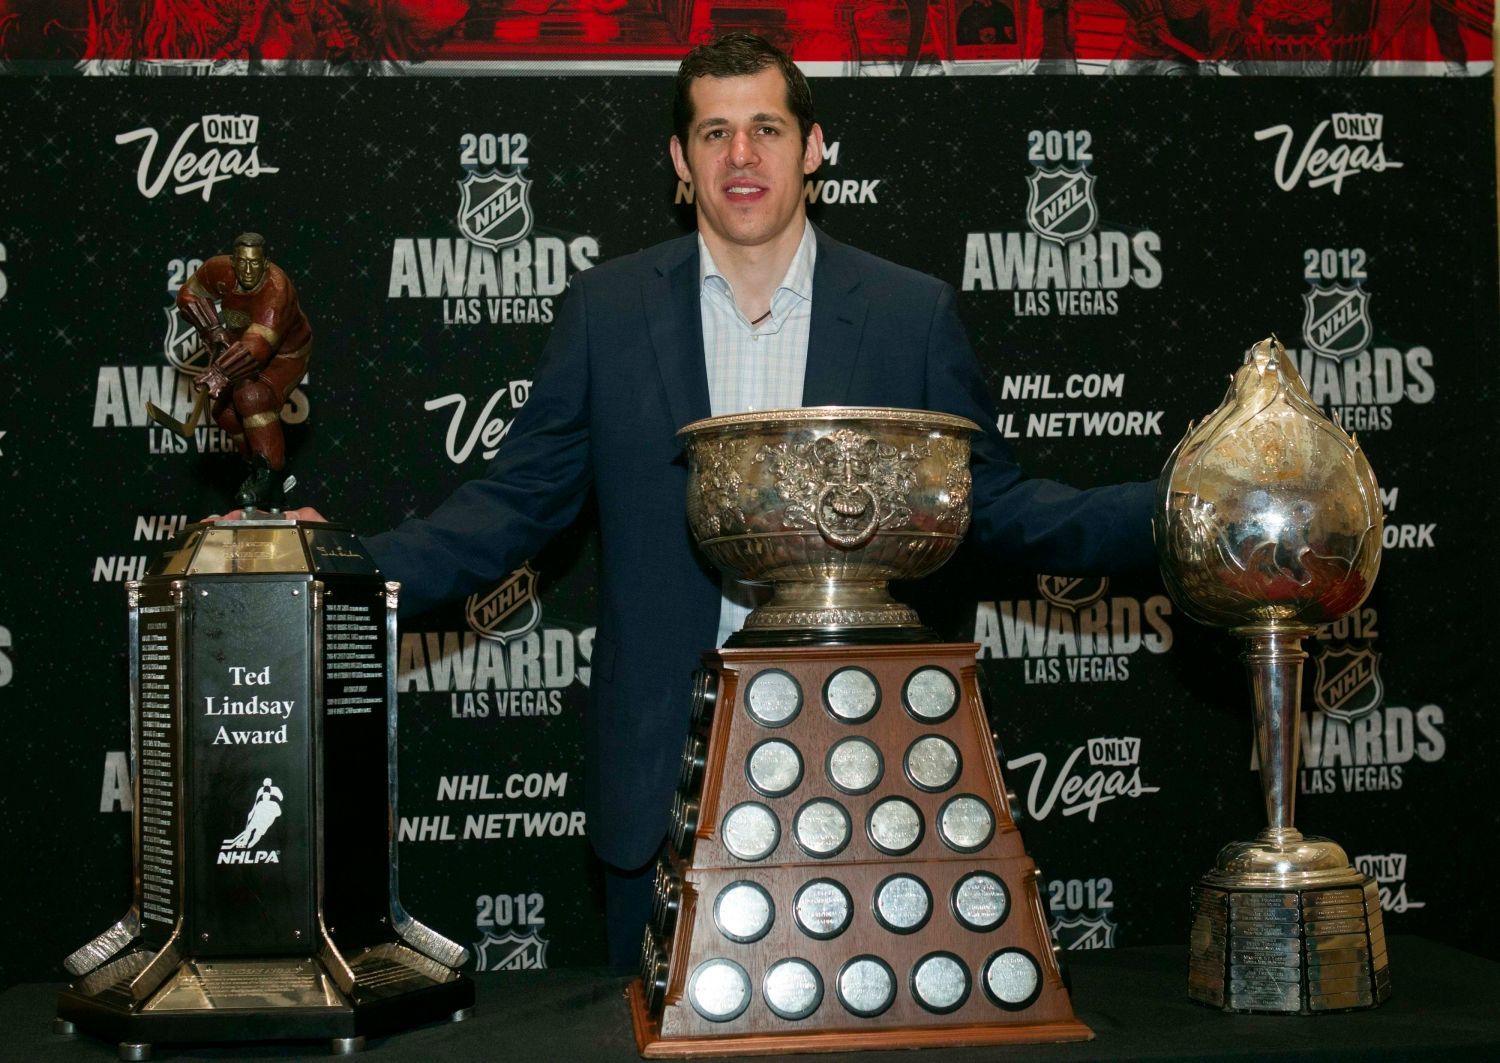 Útočník Pittsburghu Penguins Jevgenij Malkin pózuje s Ted Lindsay Award, Art Ross Trophy a Hart Trophy během předávání trofejí NHL v Las Vegas za sezónu 2011/12